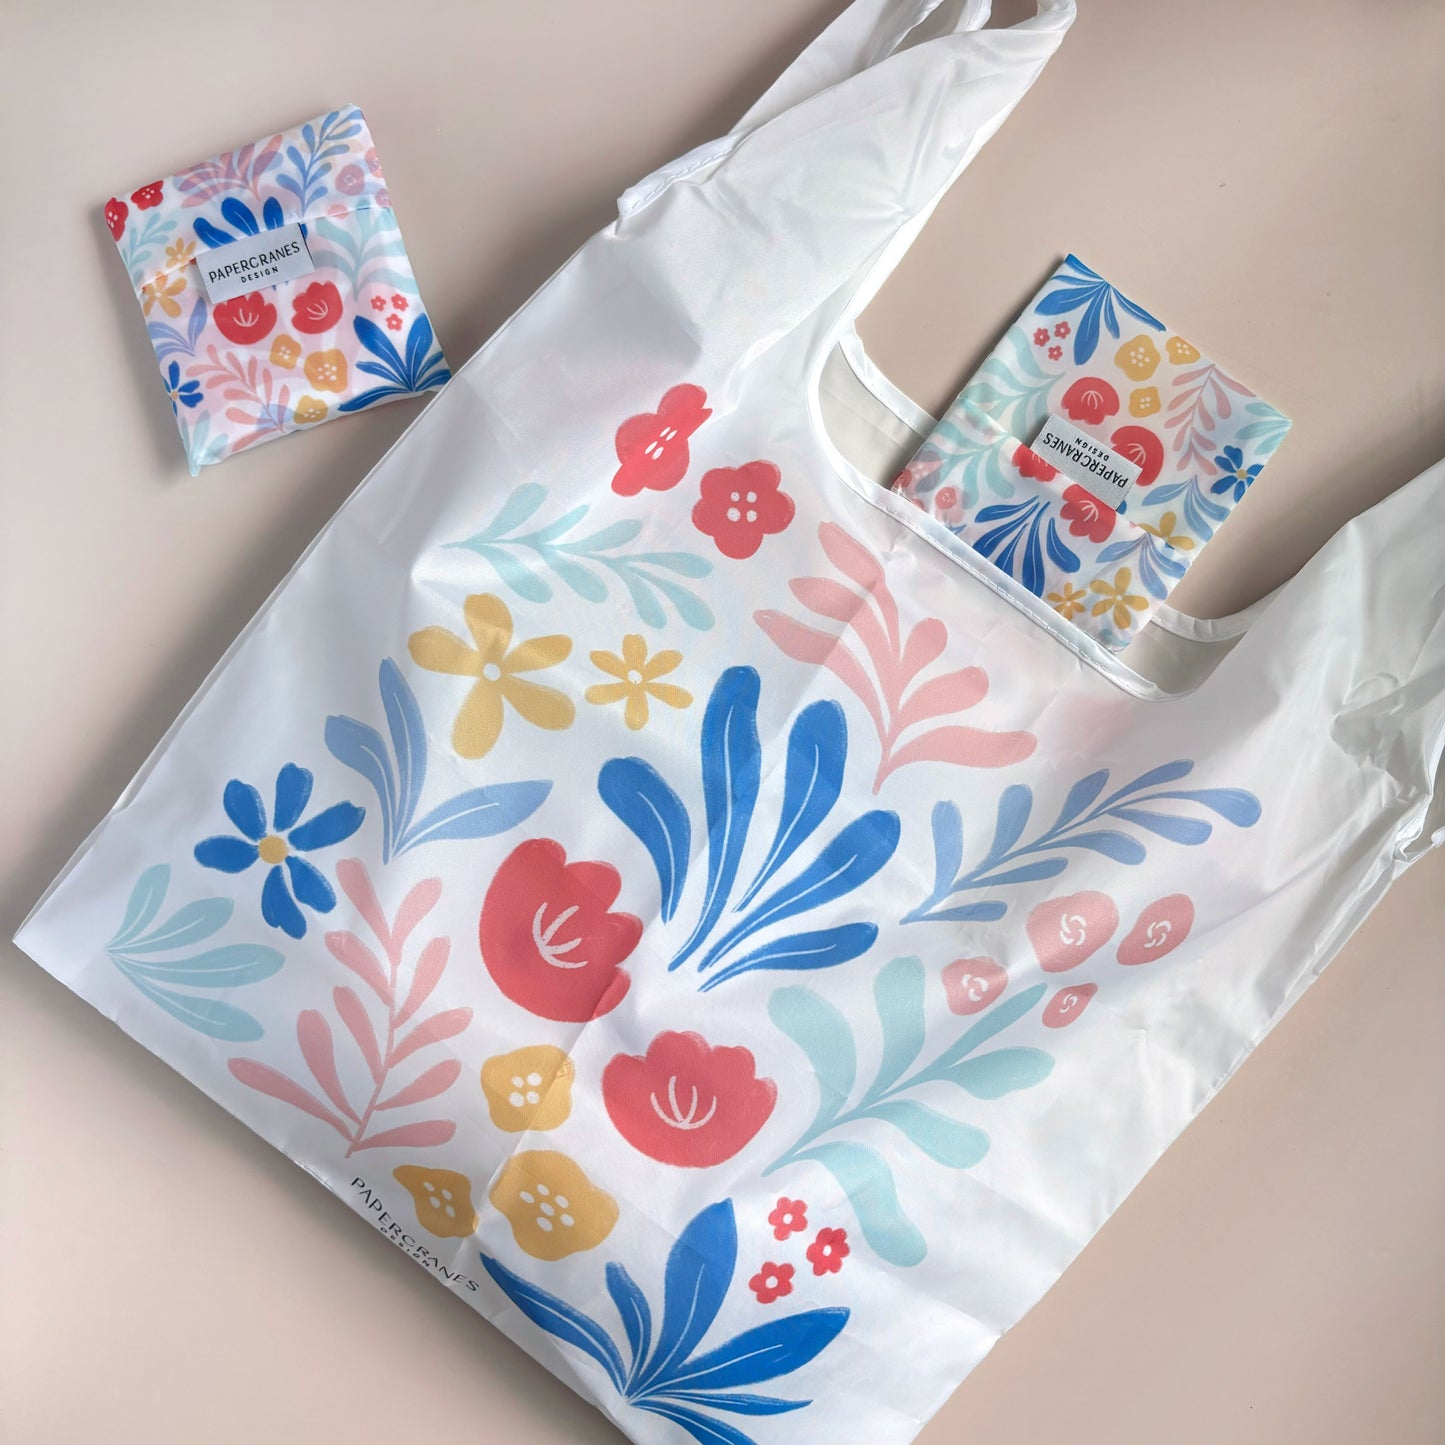 Painter’s Garden Reusable Shopping Bag